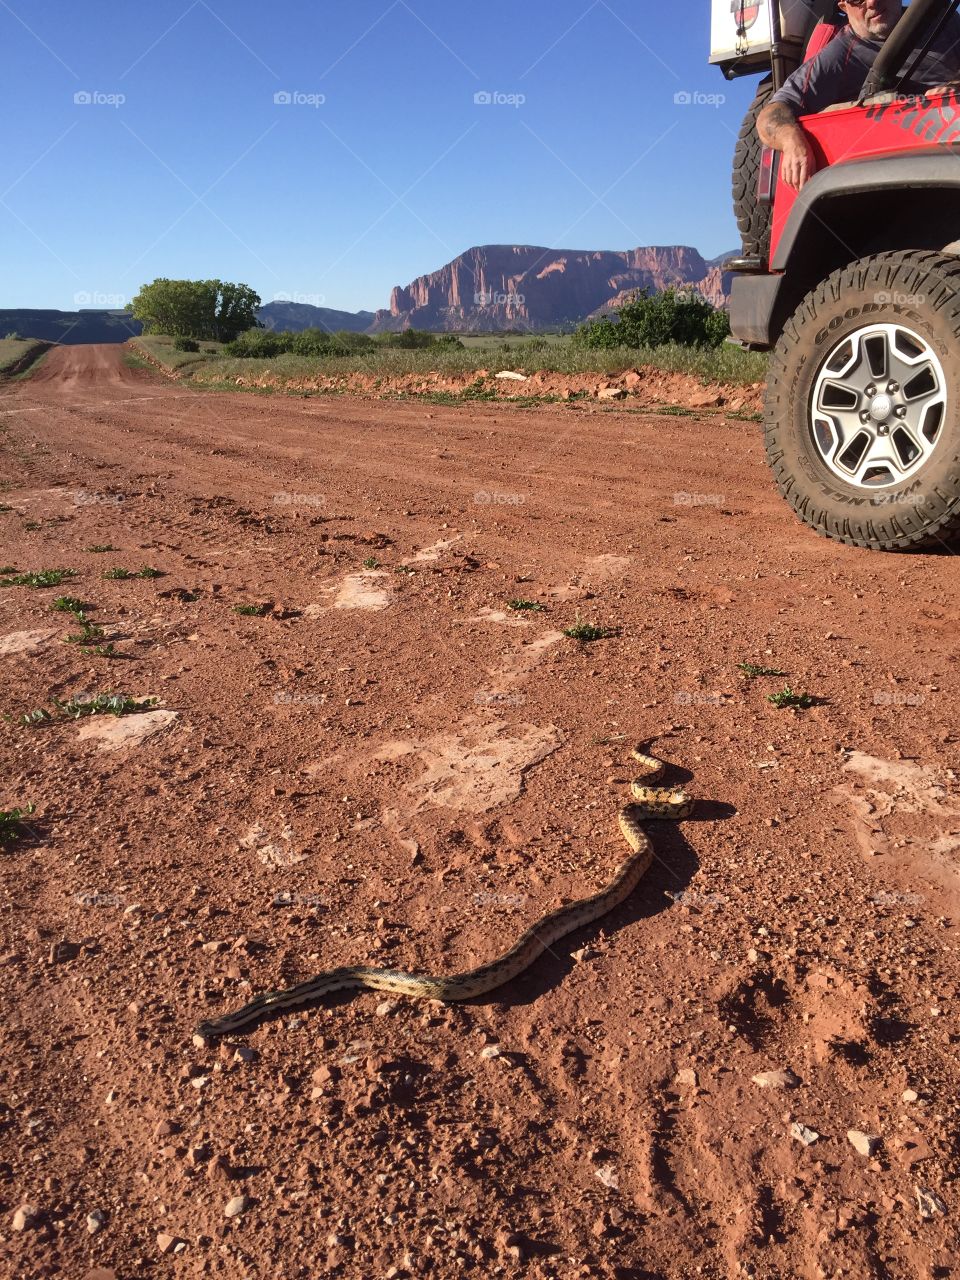 Bull snake crossing a desert road. 